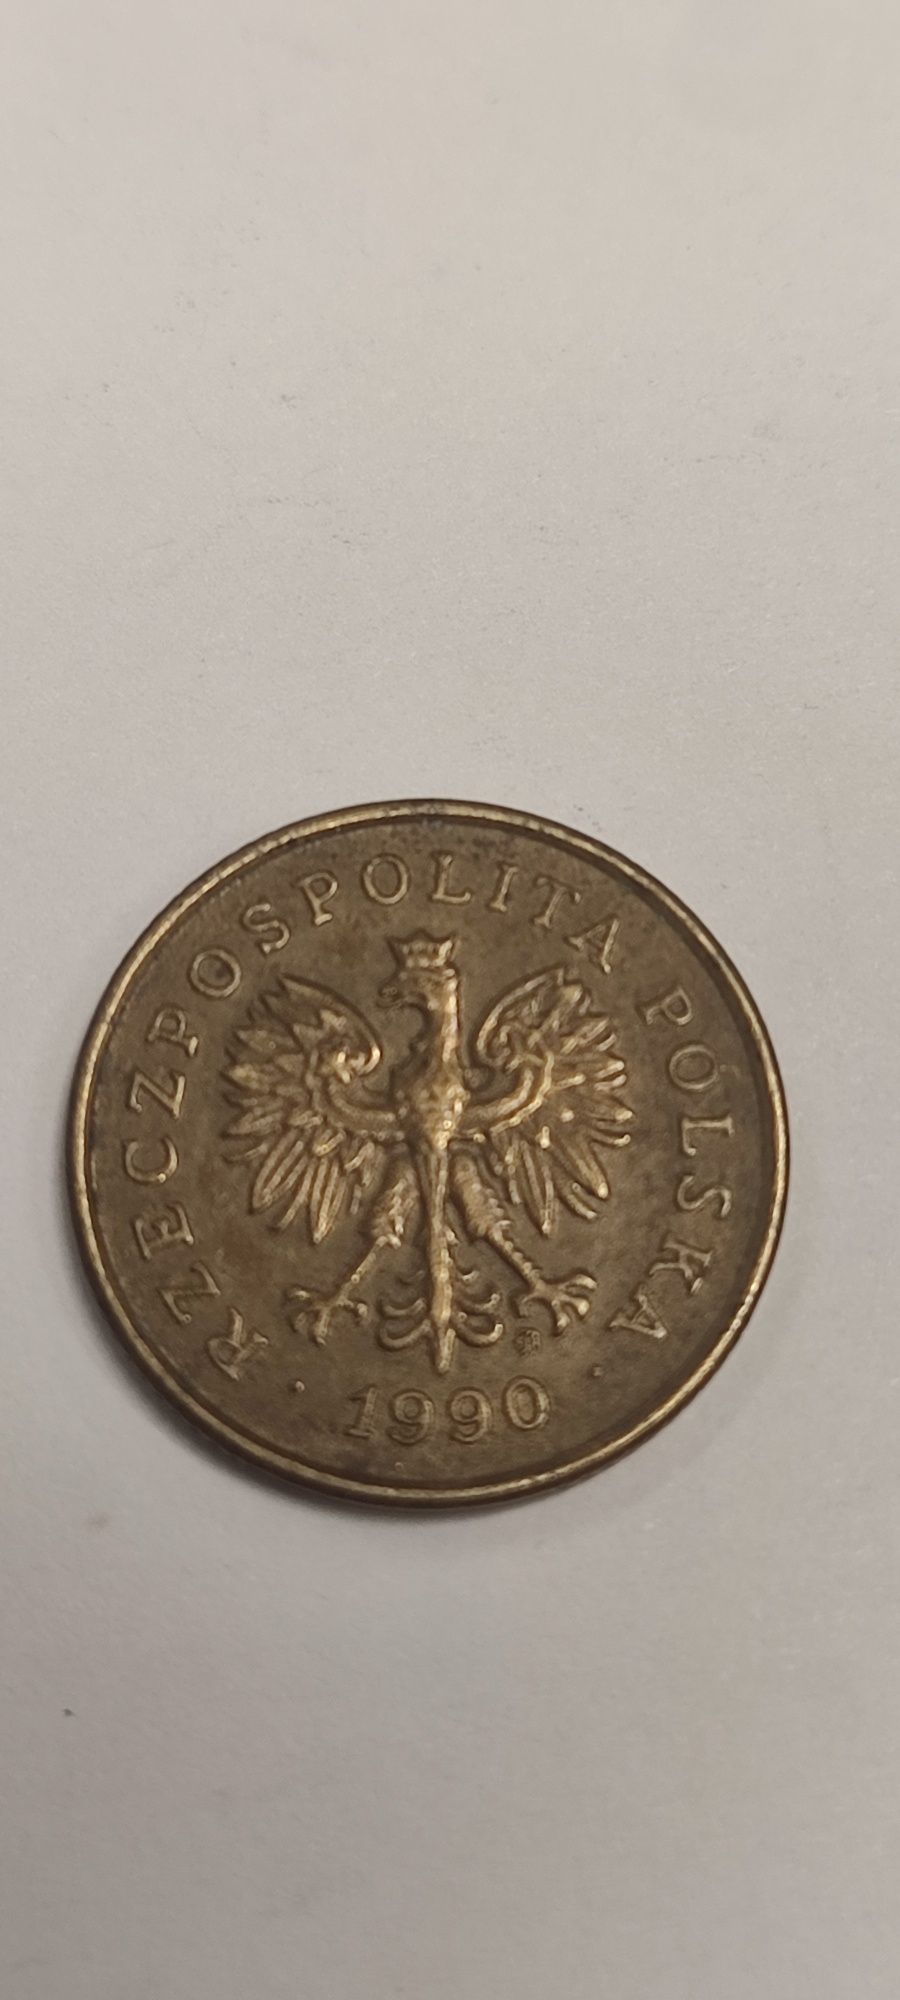 Moneta 5 gr 1990r